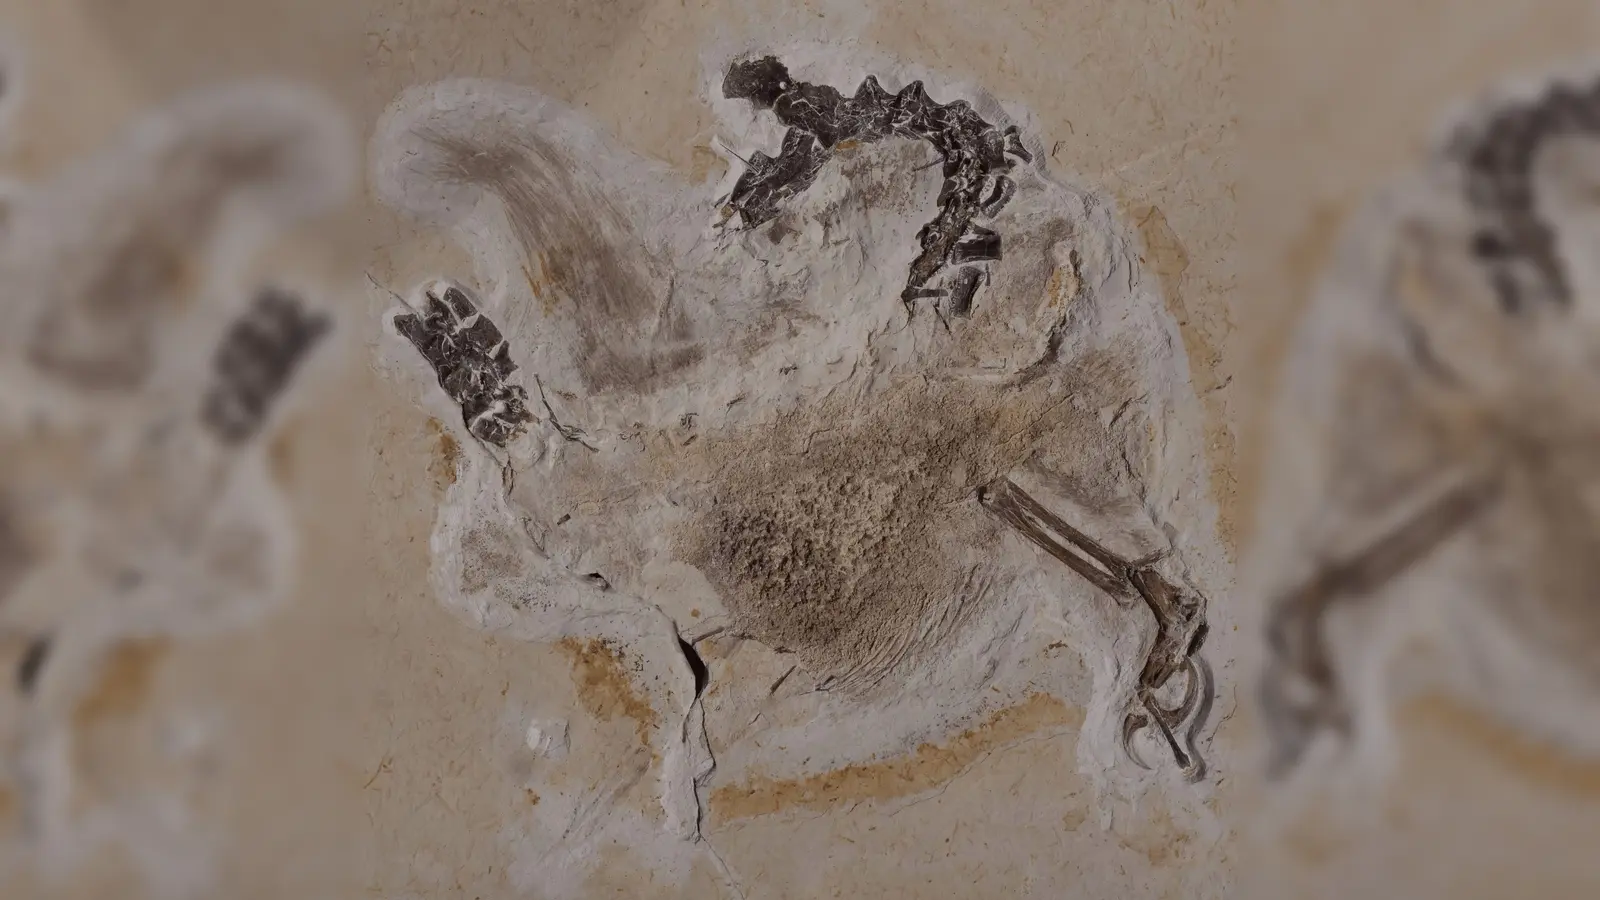 Das Fossil des Sauriers Ubirajara befindet sich im Naturkundemuseum in Karlsruhe, jetzt sollen die versteinerten Überreste an Brasilien zurückerstattet werden. (Foto: Staatliches Museum für Naturkunde Karlsruhe/dpa)